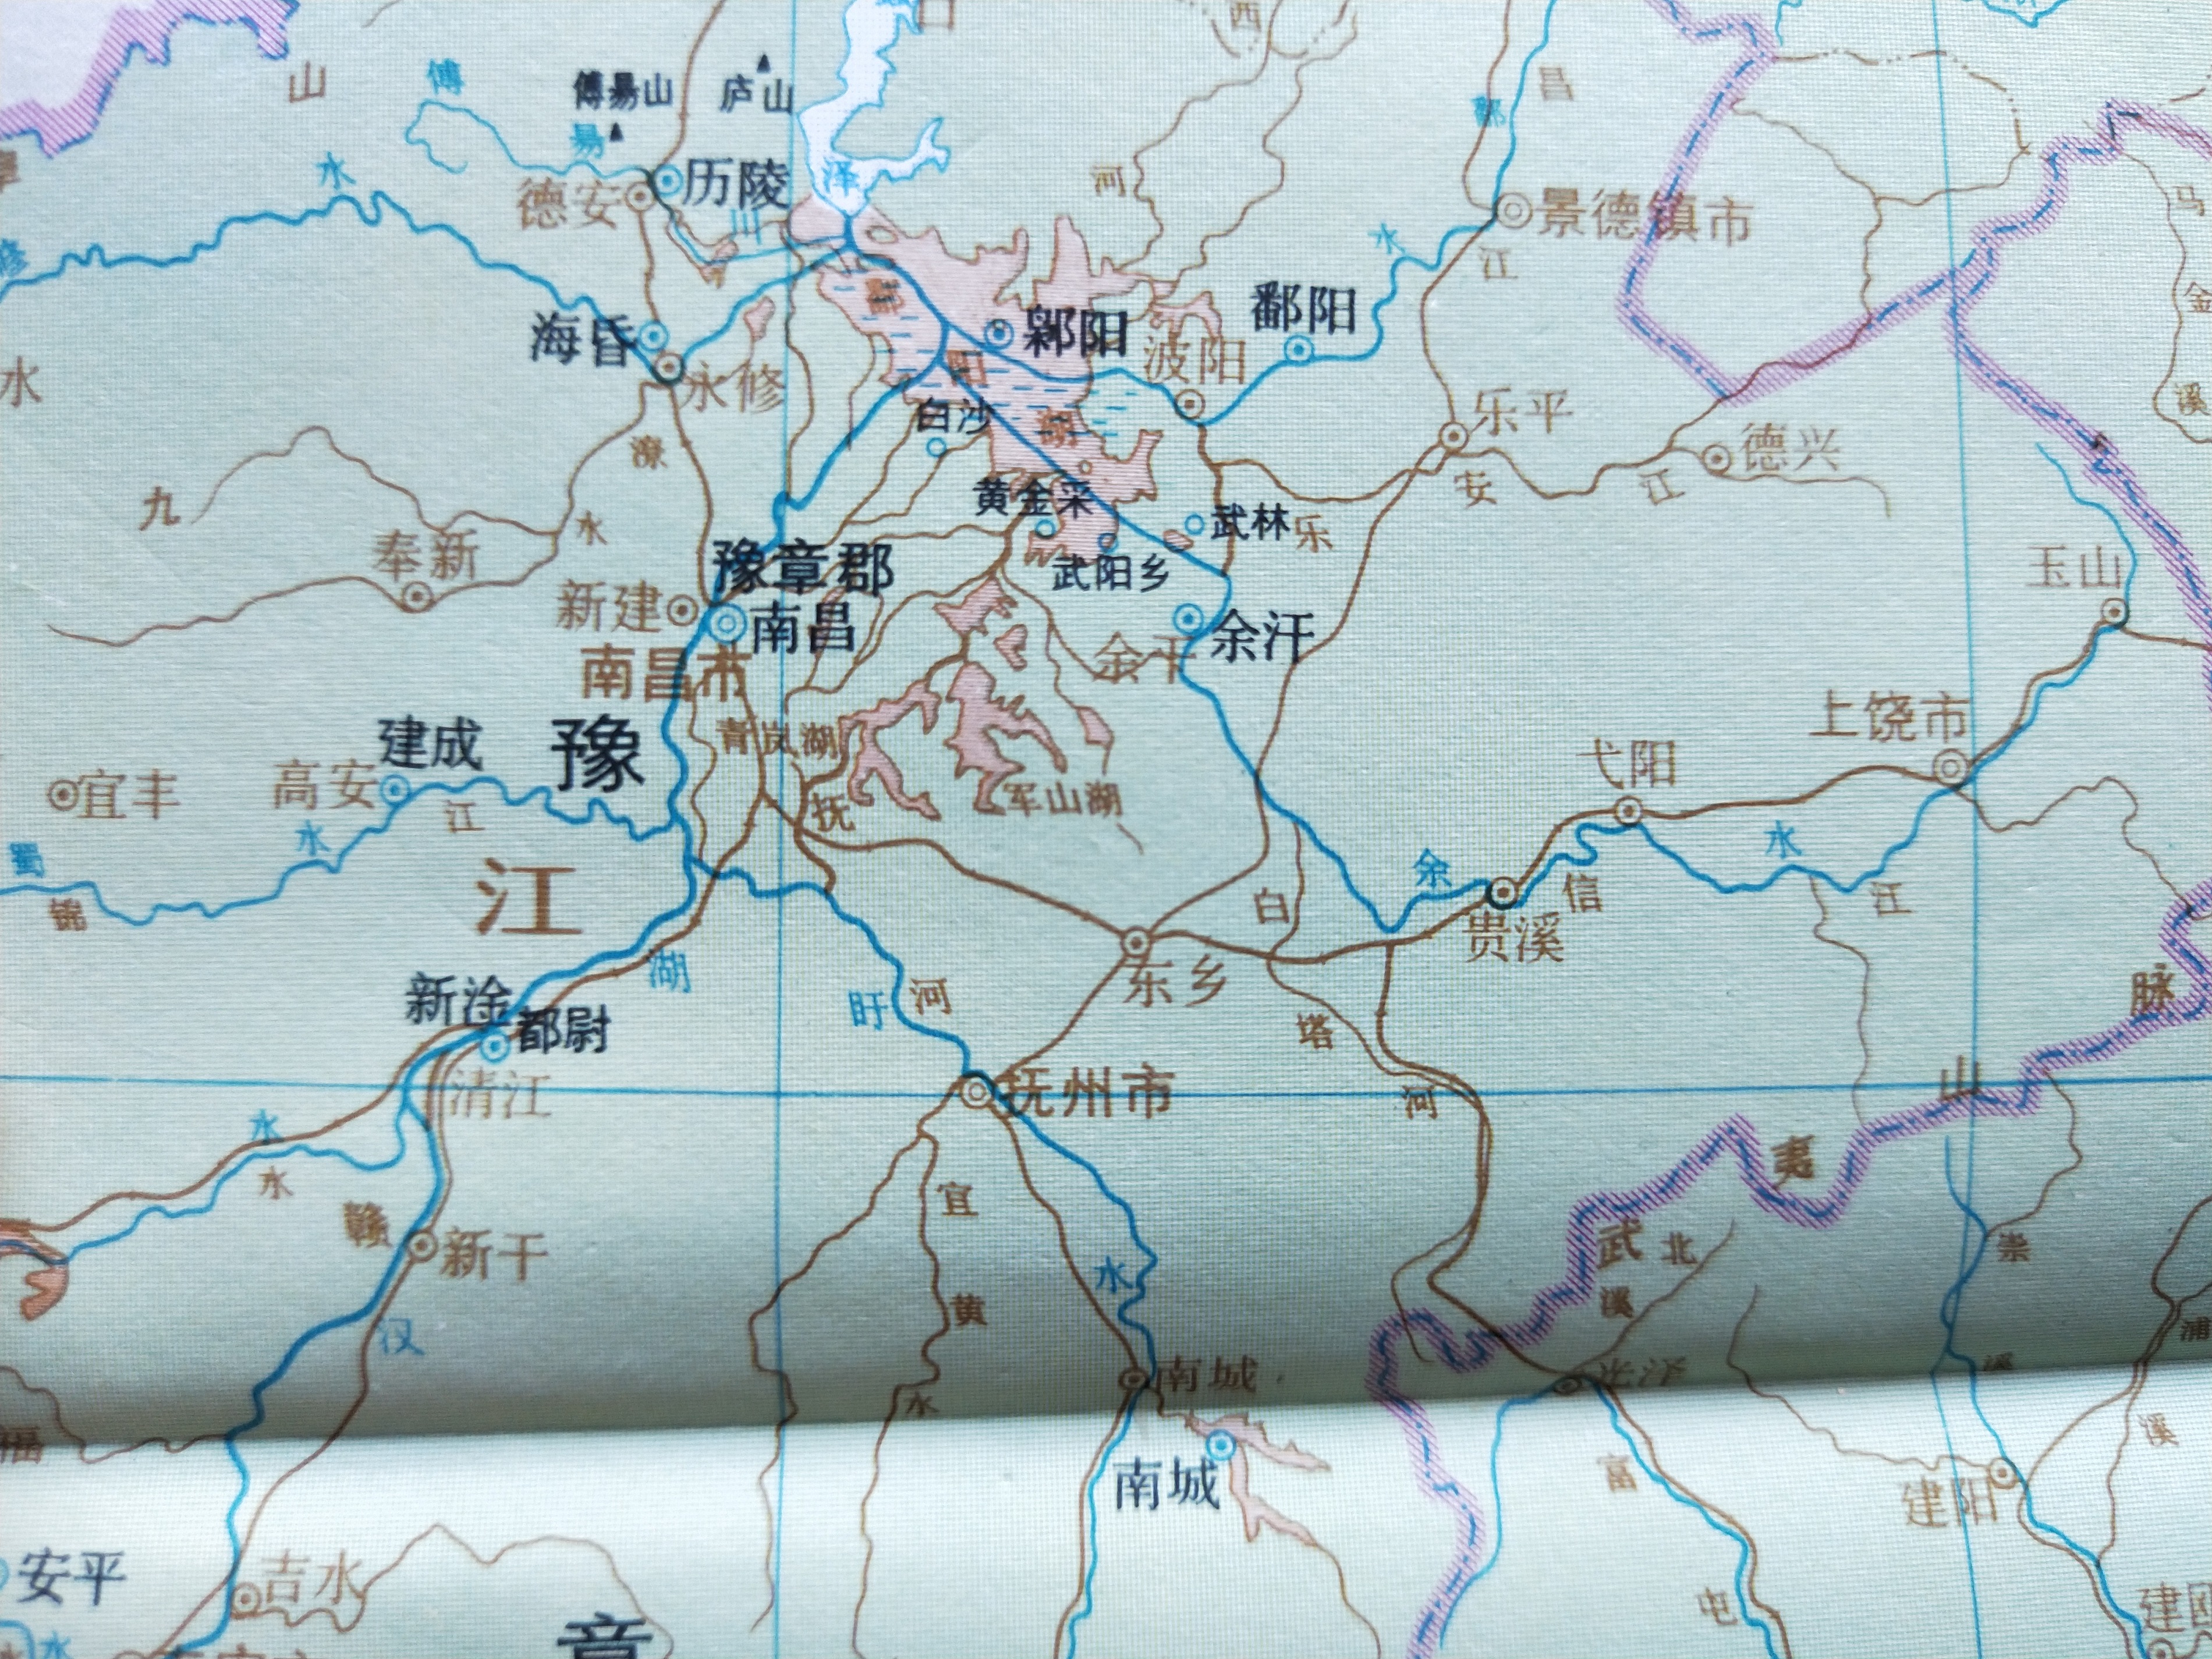 古地名演变:江西抚州古地名及区划演变过程